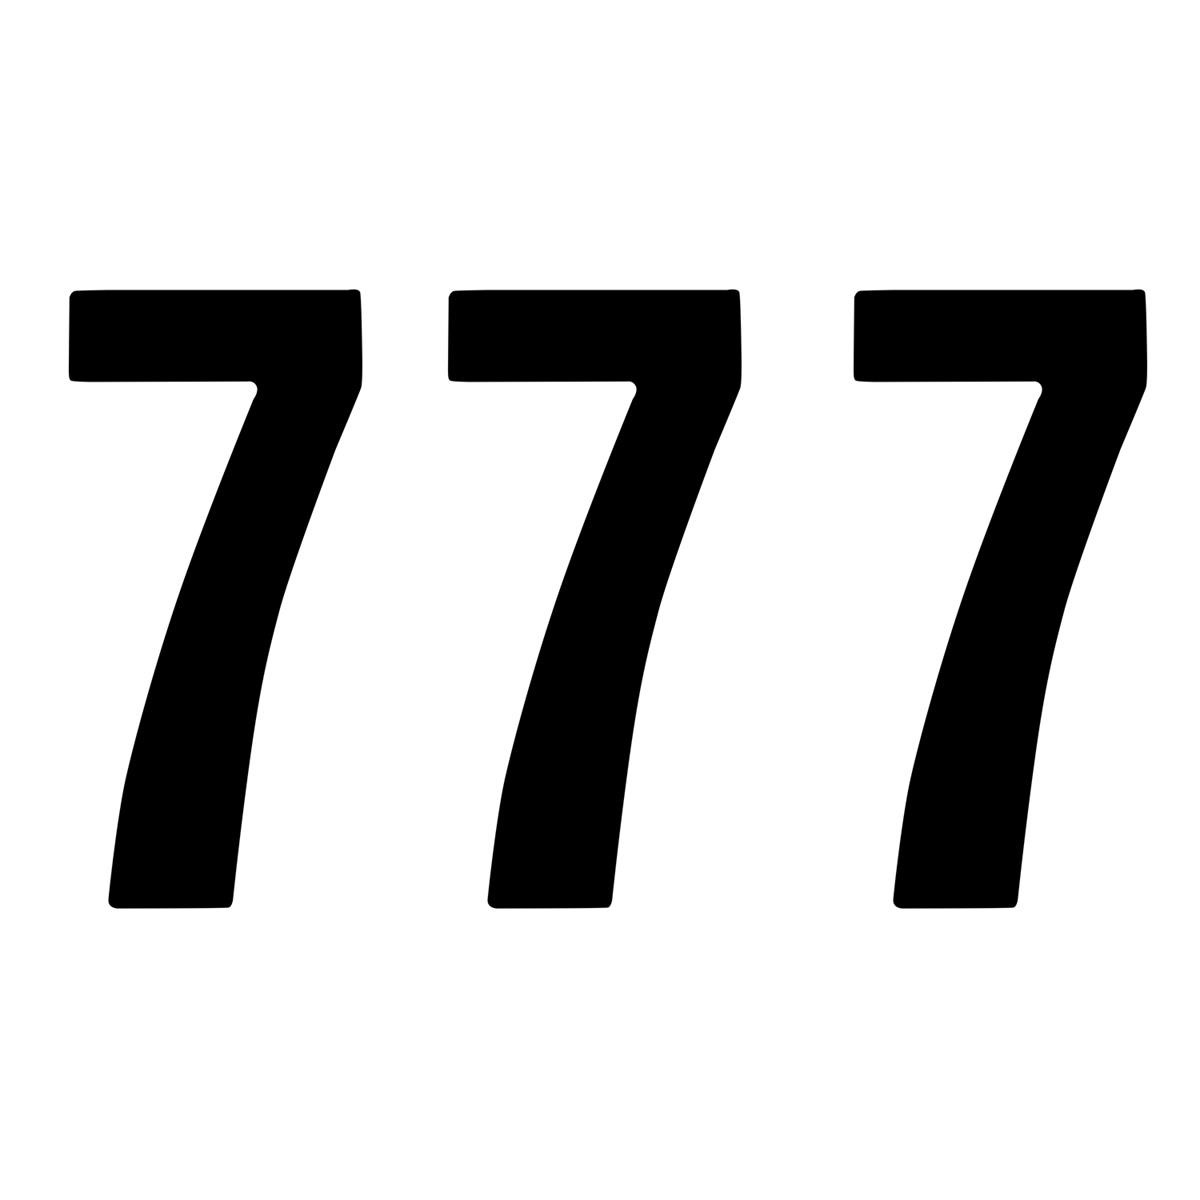 ZAP Numbers Set Racing Number 7, Black, 14 cm, 3 Pack